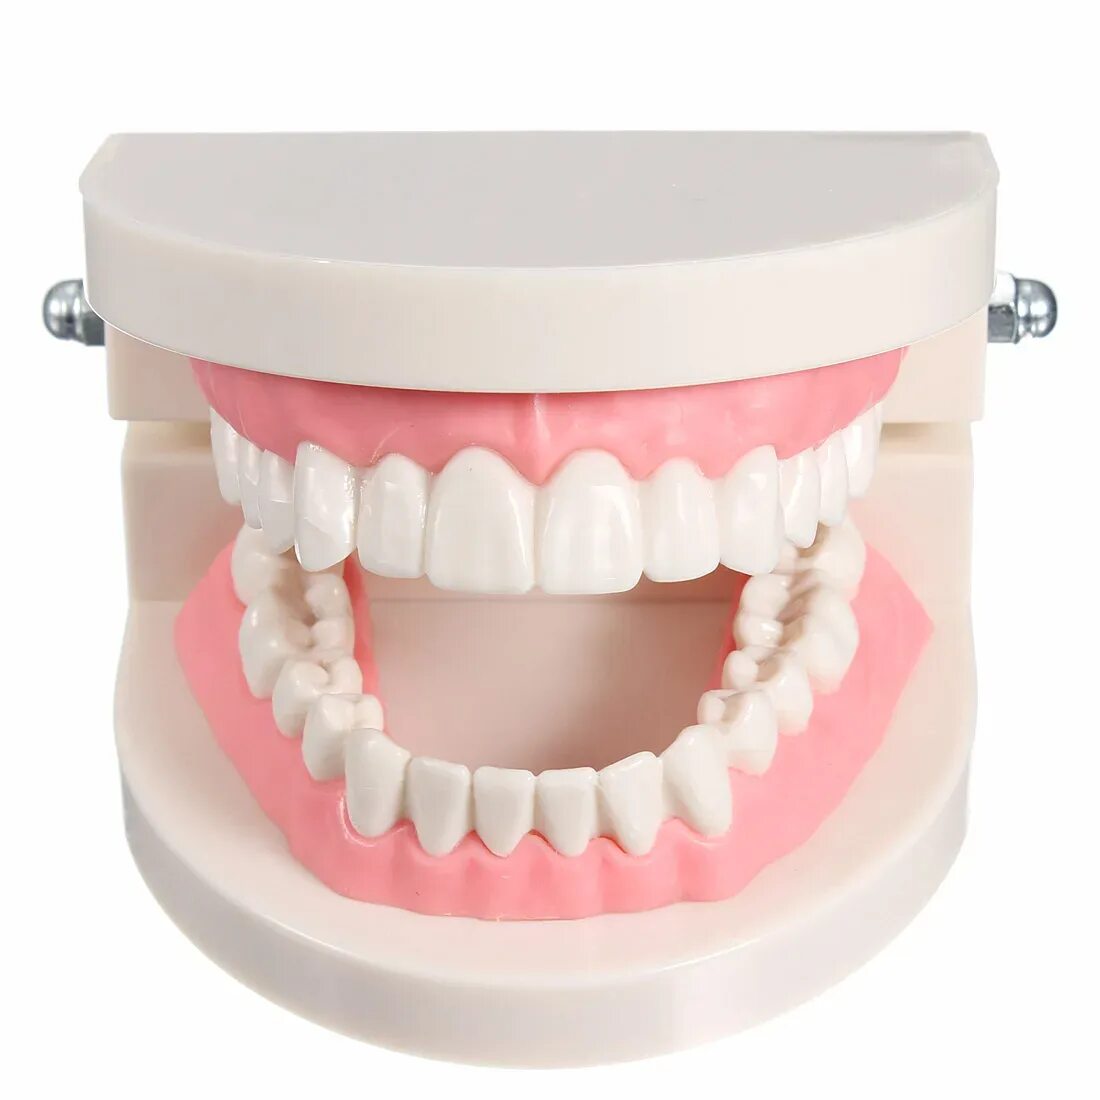 Модель зубов. Муляж зубов. Модель челюсти с зубами. Искусственная челюсть.